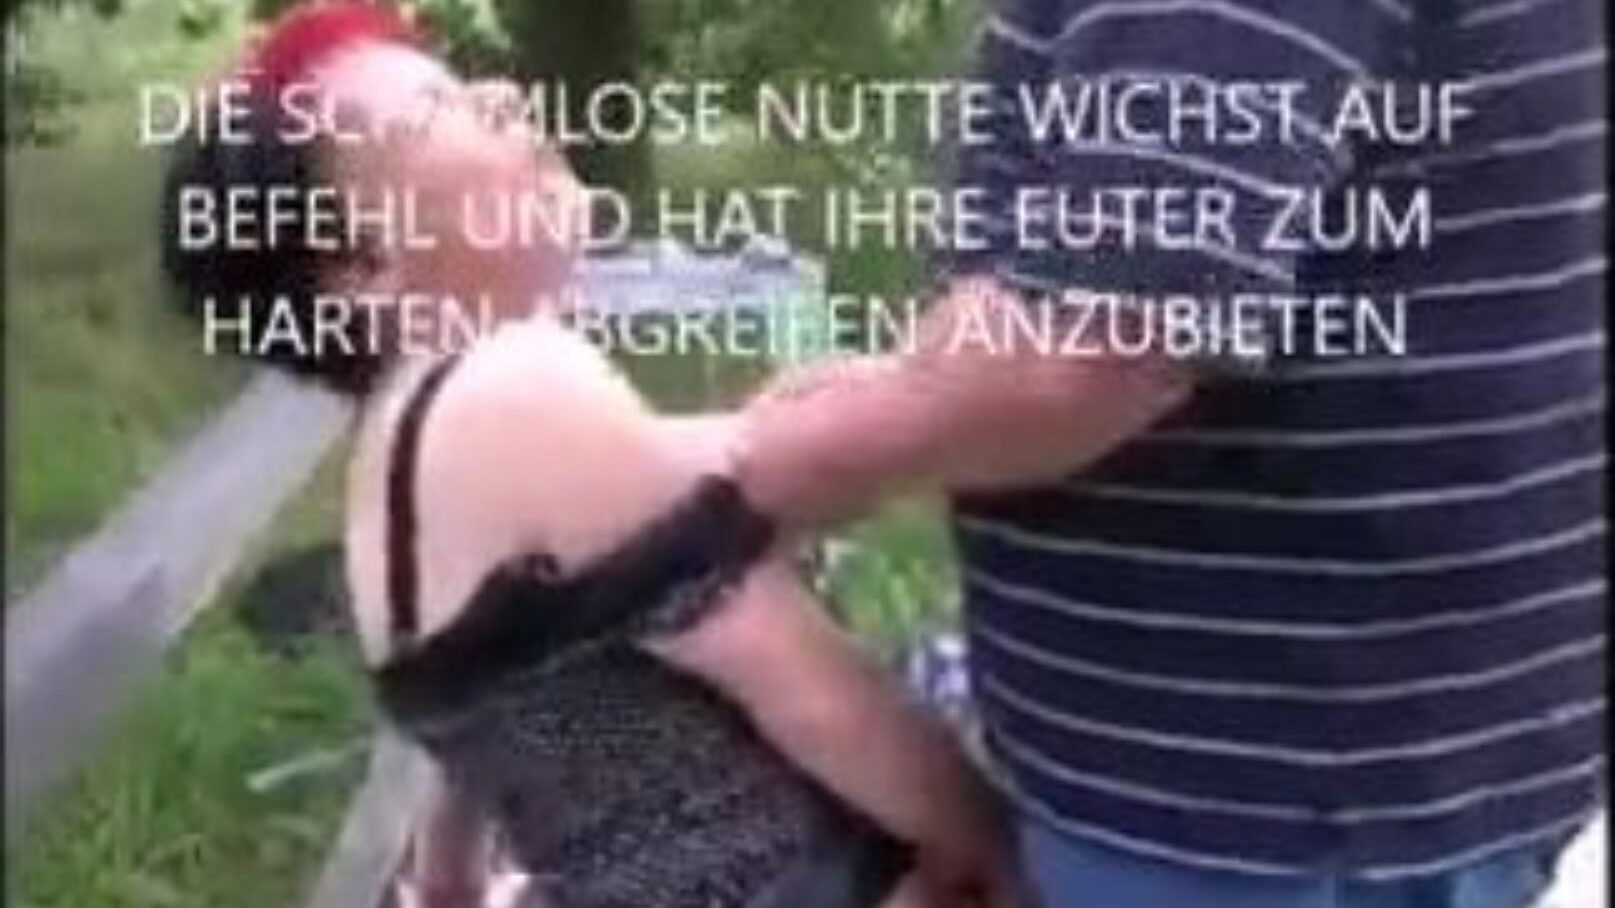 μητέρα θα ήθελα να γαμήσω von liepzig: milf online δωρεάν πορνό βίντεο 65 - xhamster παρακολουθήστε milf von liepzig tube fuckfest ταινία σκηνή για δωρεάν για όλους στο xhamster, με την πιο καυτή γερμανική μητέρα που θα ήθελα να γαμήσω δωρεάν online & δωρεάν συναυλίες βίντεο πορνογραφίας milf xnxx